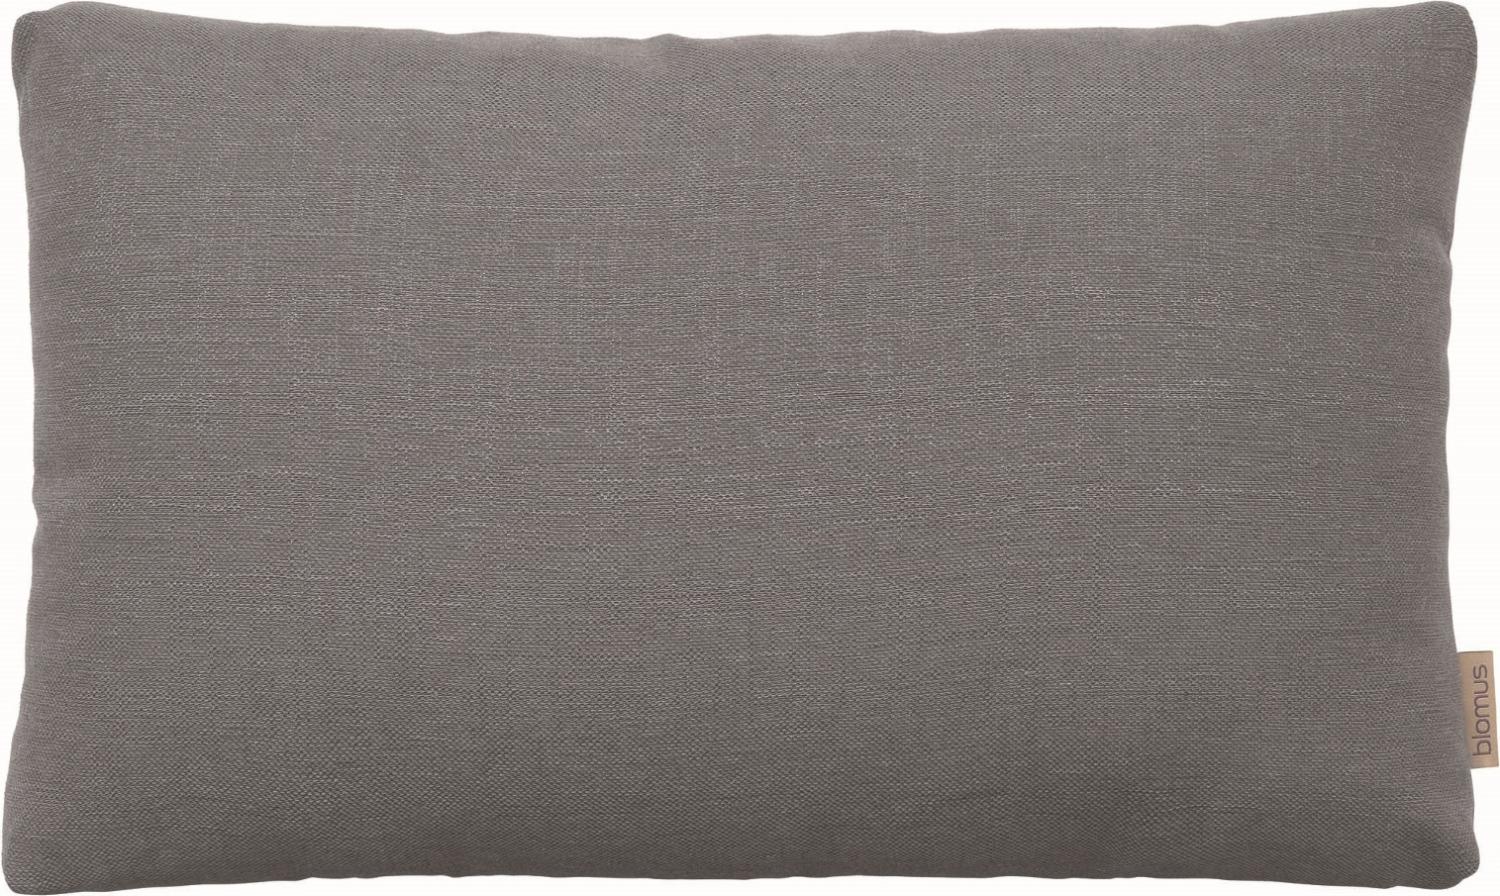 Blomus Kissenbezug CASATA, Kissen Bezug, Baumwolle, Kunstfaser, steel gray, 60 x 40 cm, 66106 Bild 1